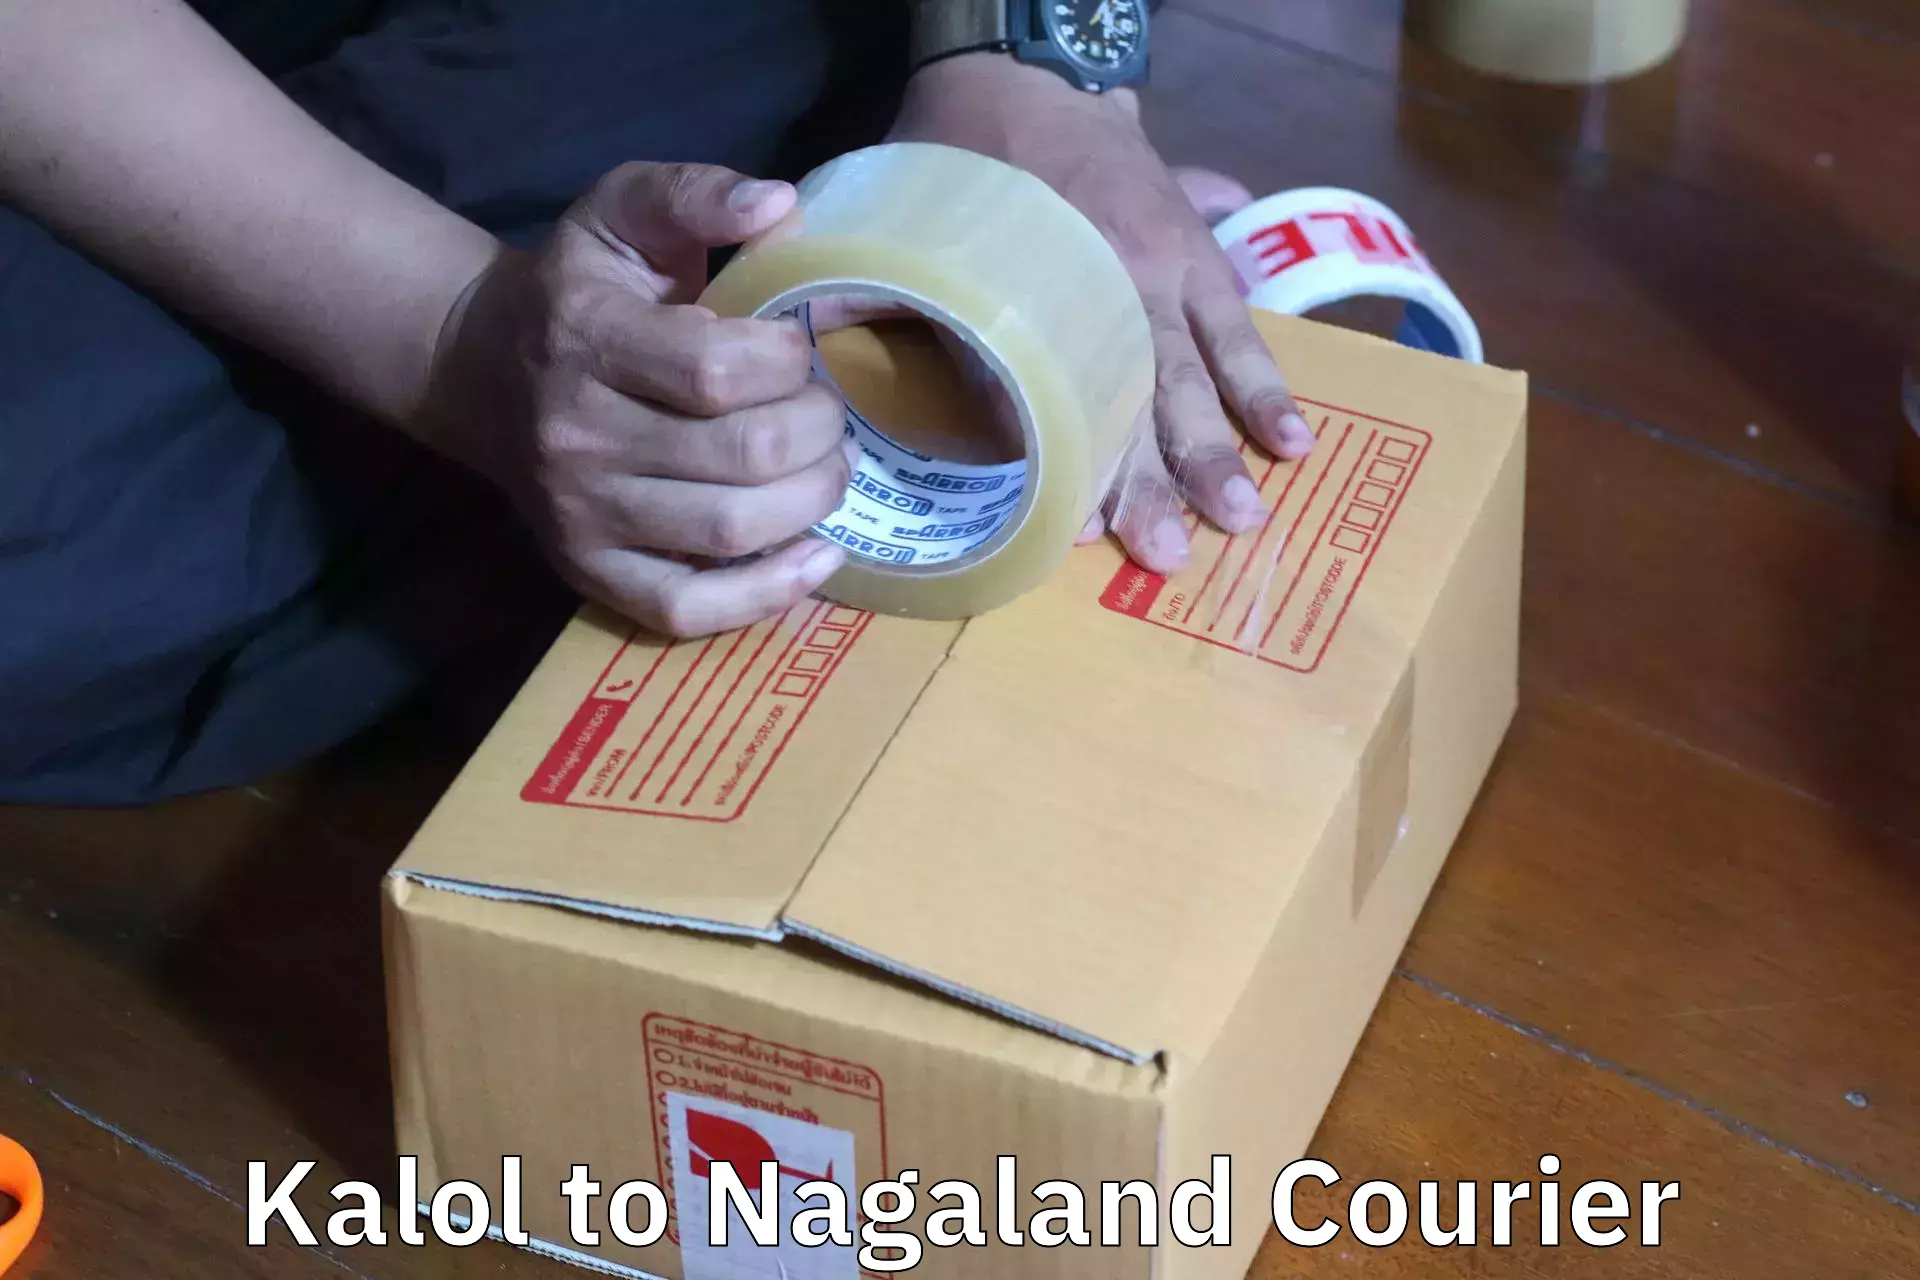 Home moving experts Kalol to Nagaland